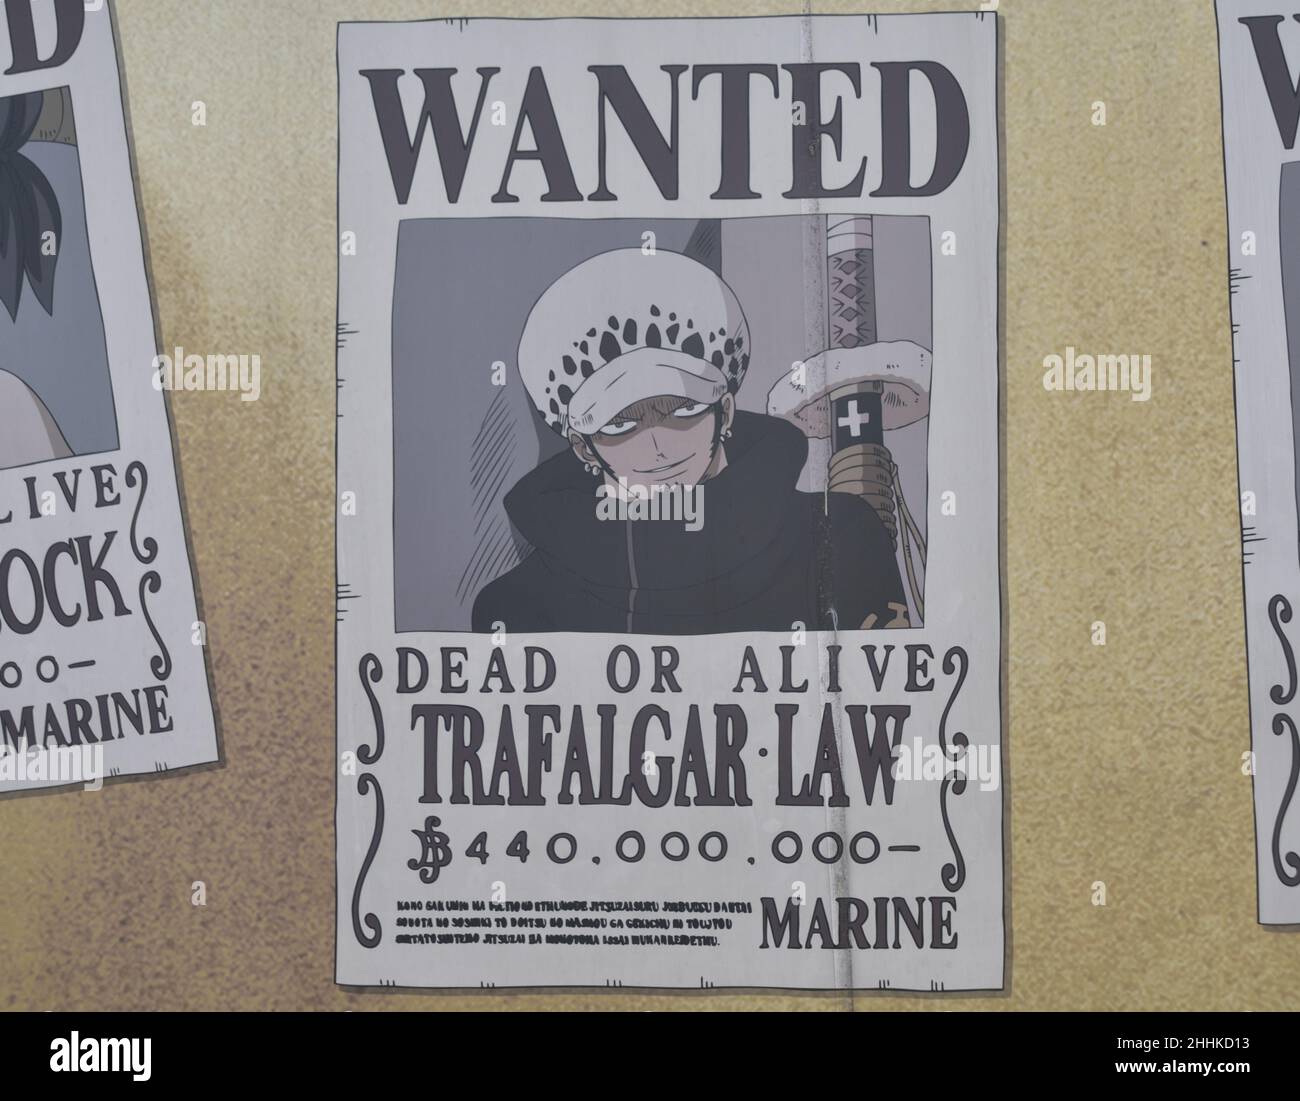 Ha voluto poster per il personaggio Trafalgar legge del manga giapponese un pezzo Foto Stock